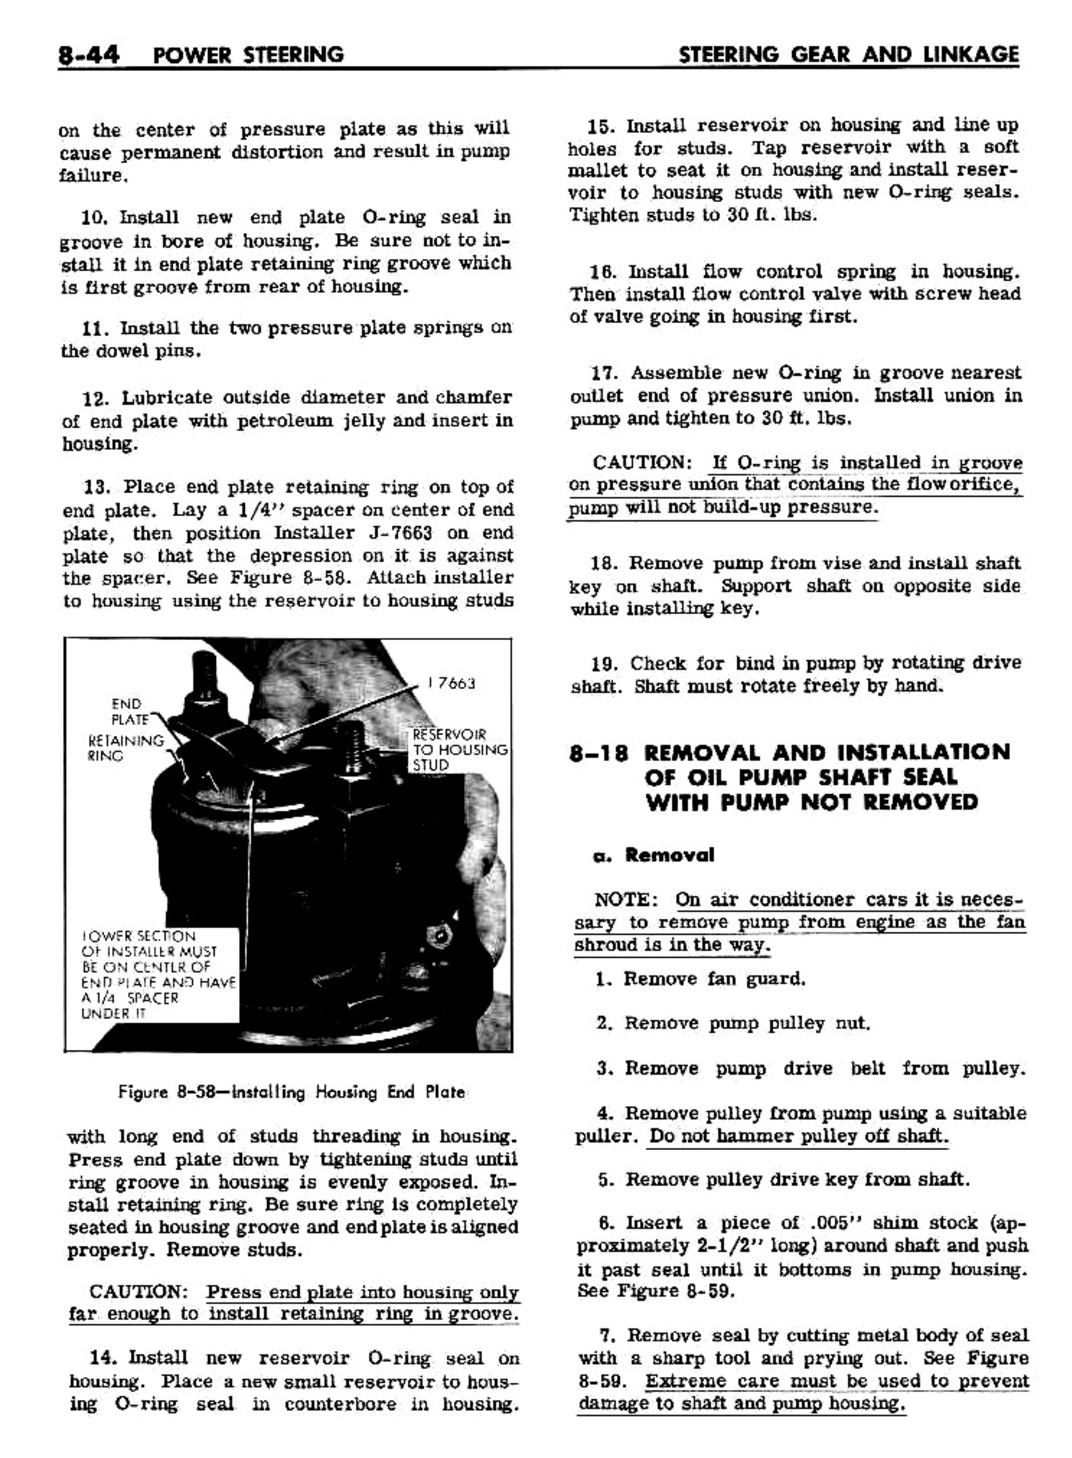 n_08 1961 Buick Shop Manual - Steering-044-044.jpg